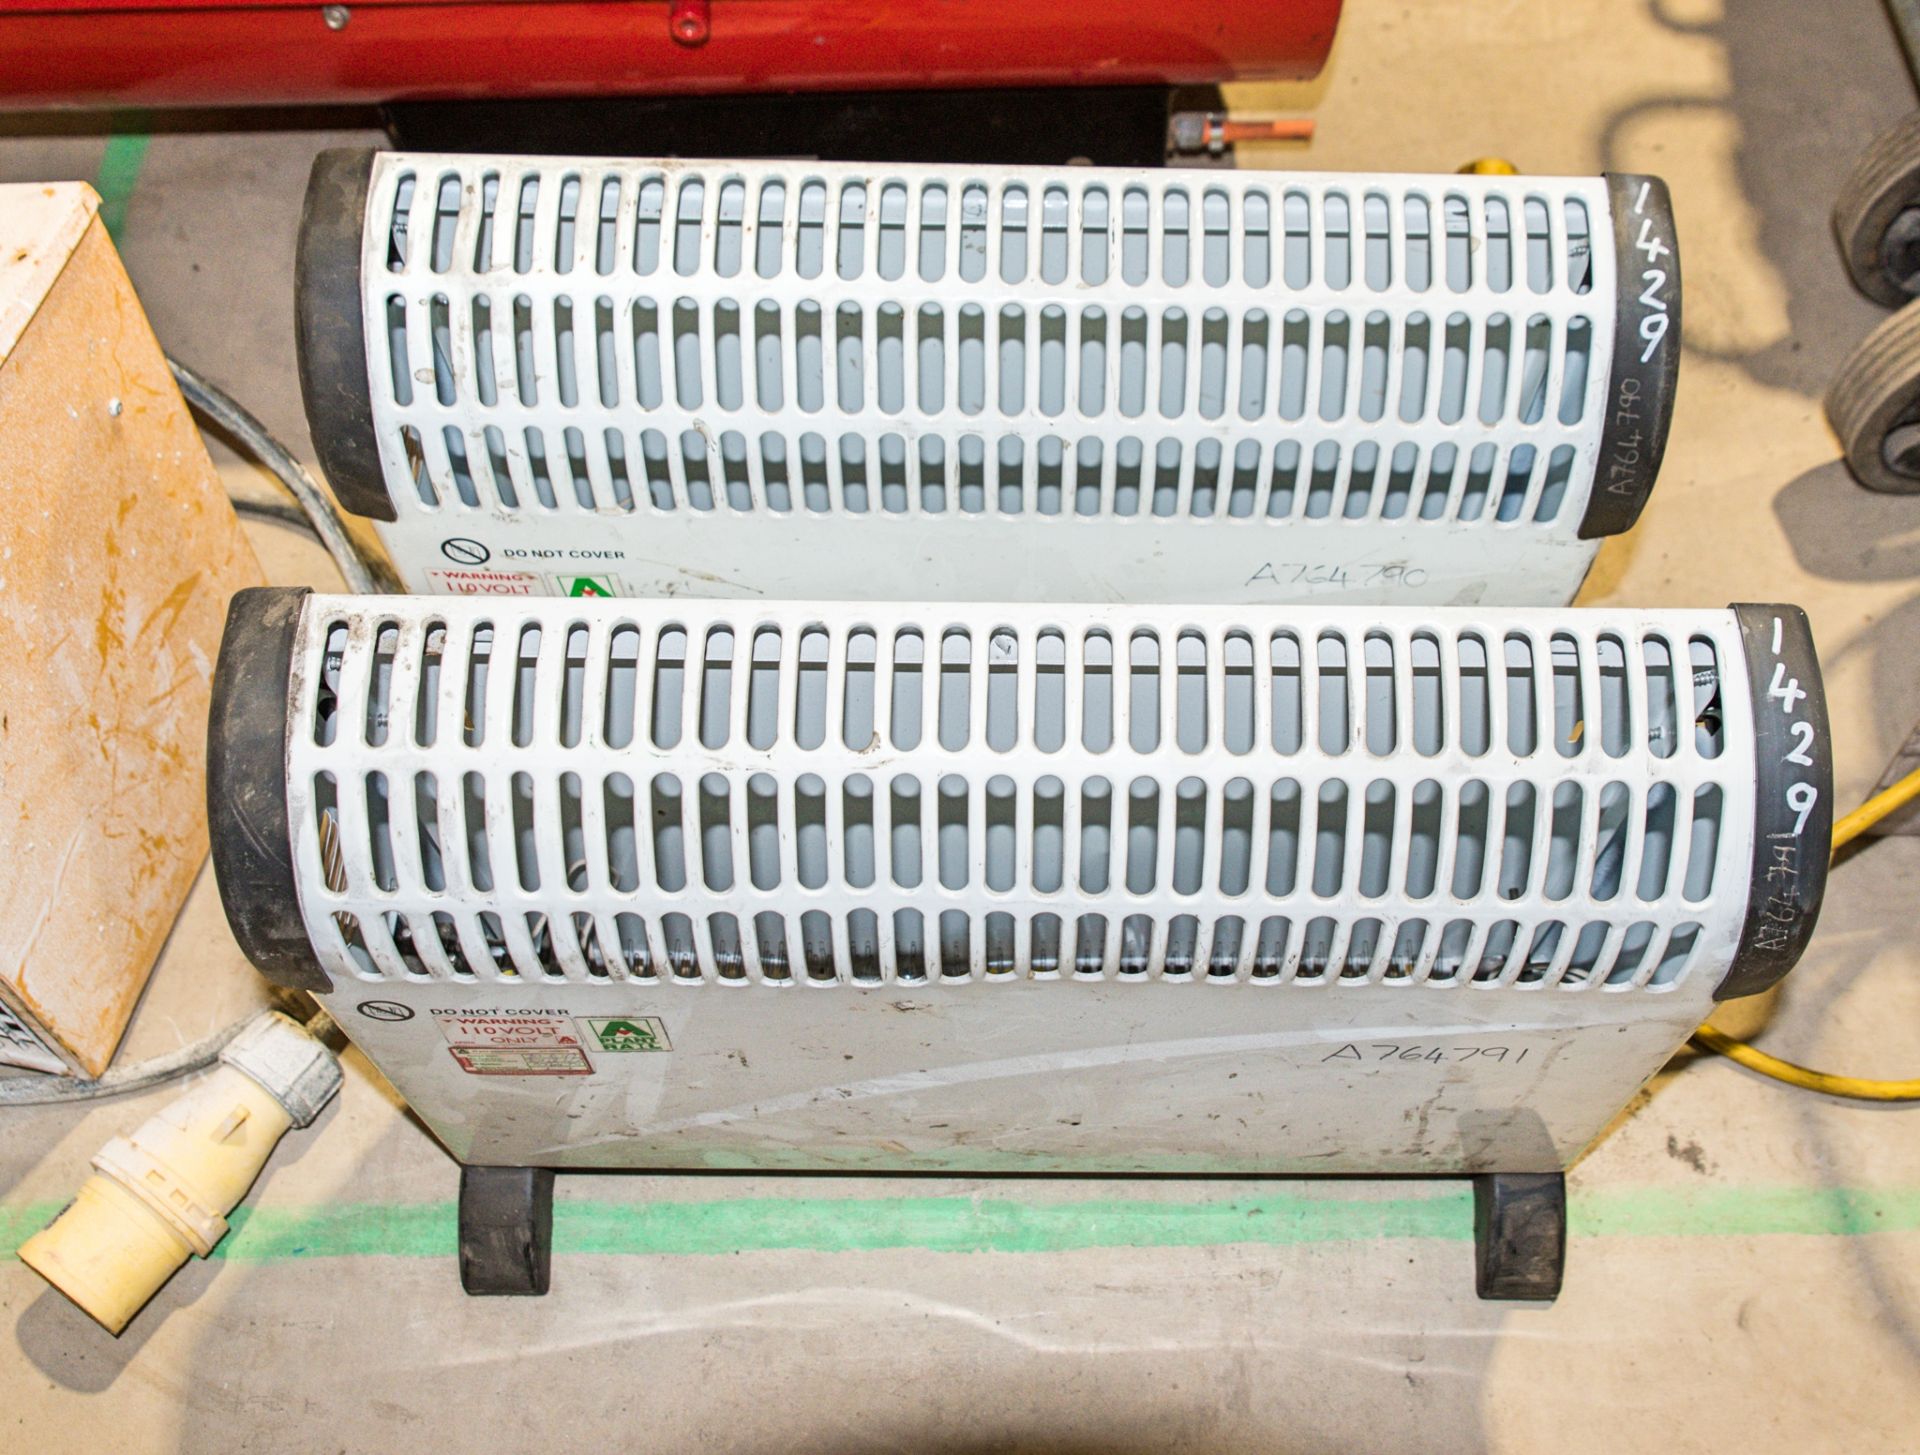 2 - 110v electric radiators CO